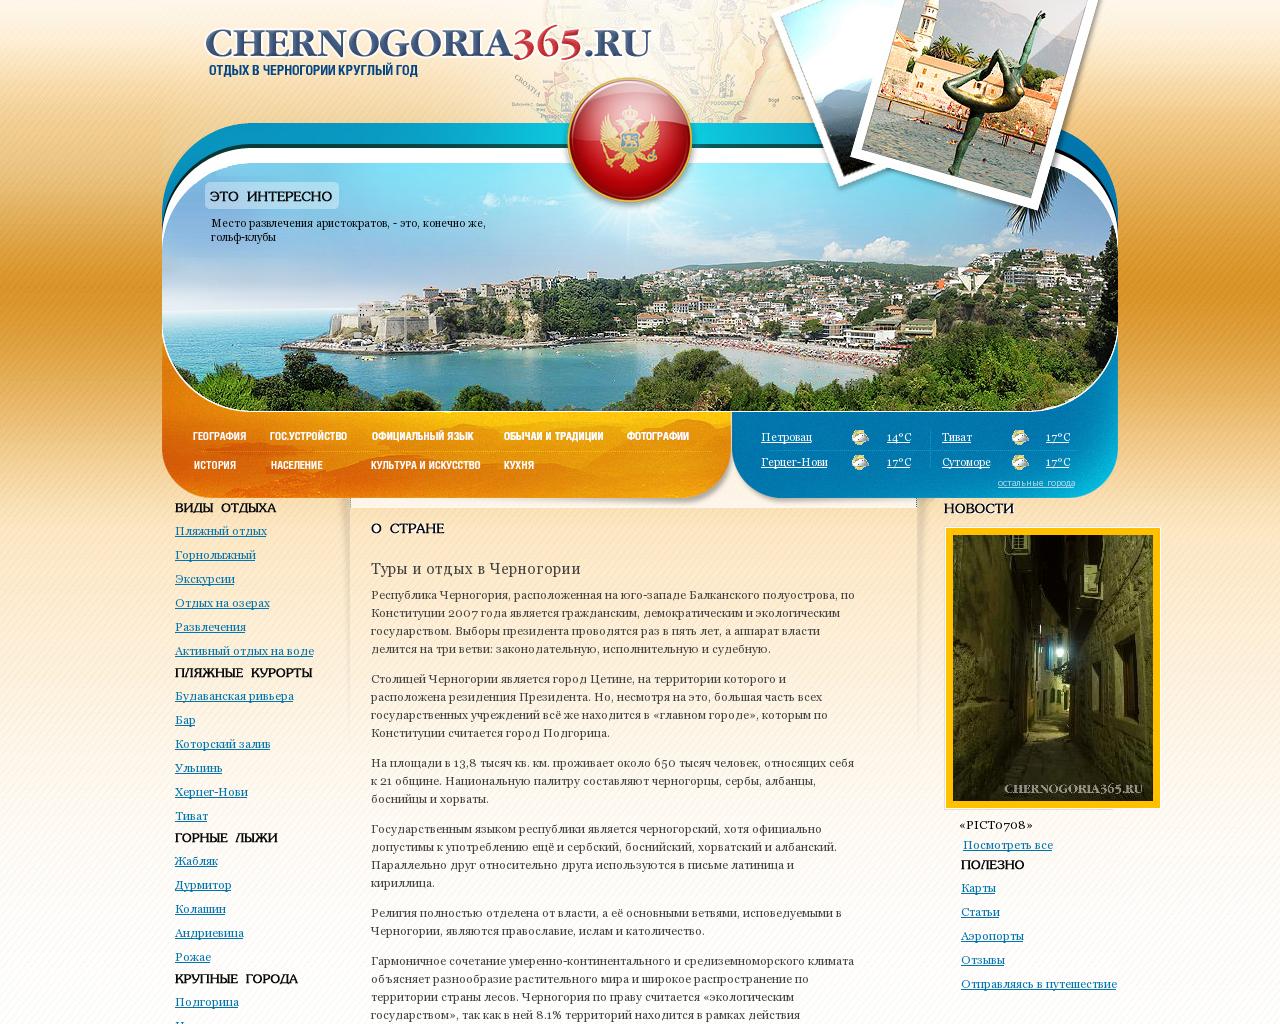 Изображение сайта chernogoria365.ru в разрешении 1280x1024